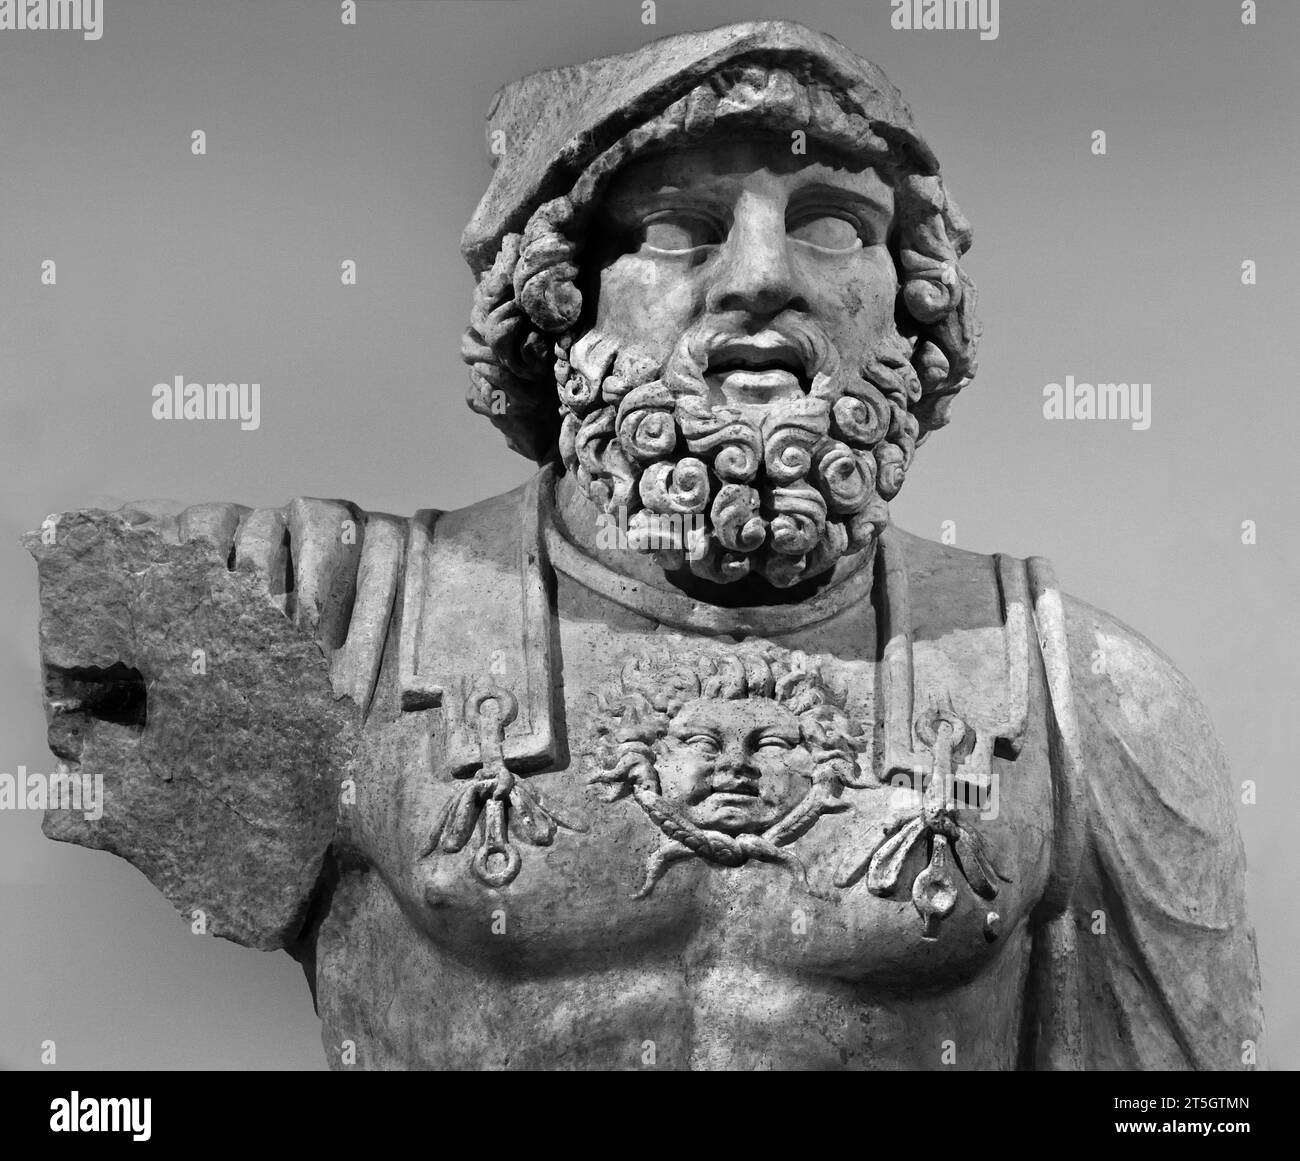 Tête romaine, Statue de Mars Ultor, 1e siècle après JC Musée archéologique national de Naples Italie. Banque D'Images